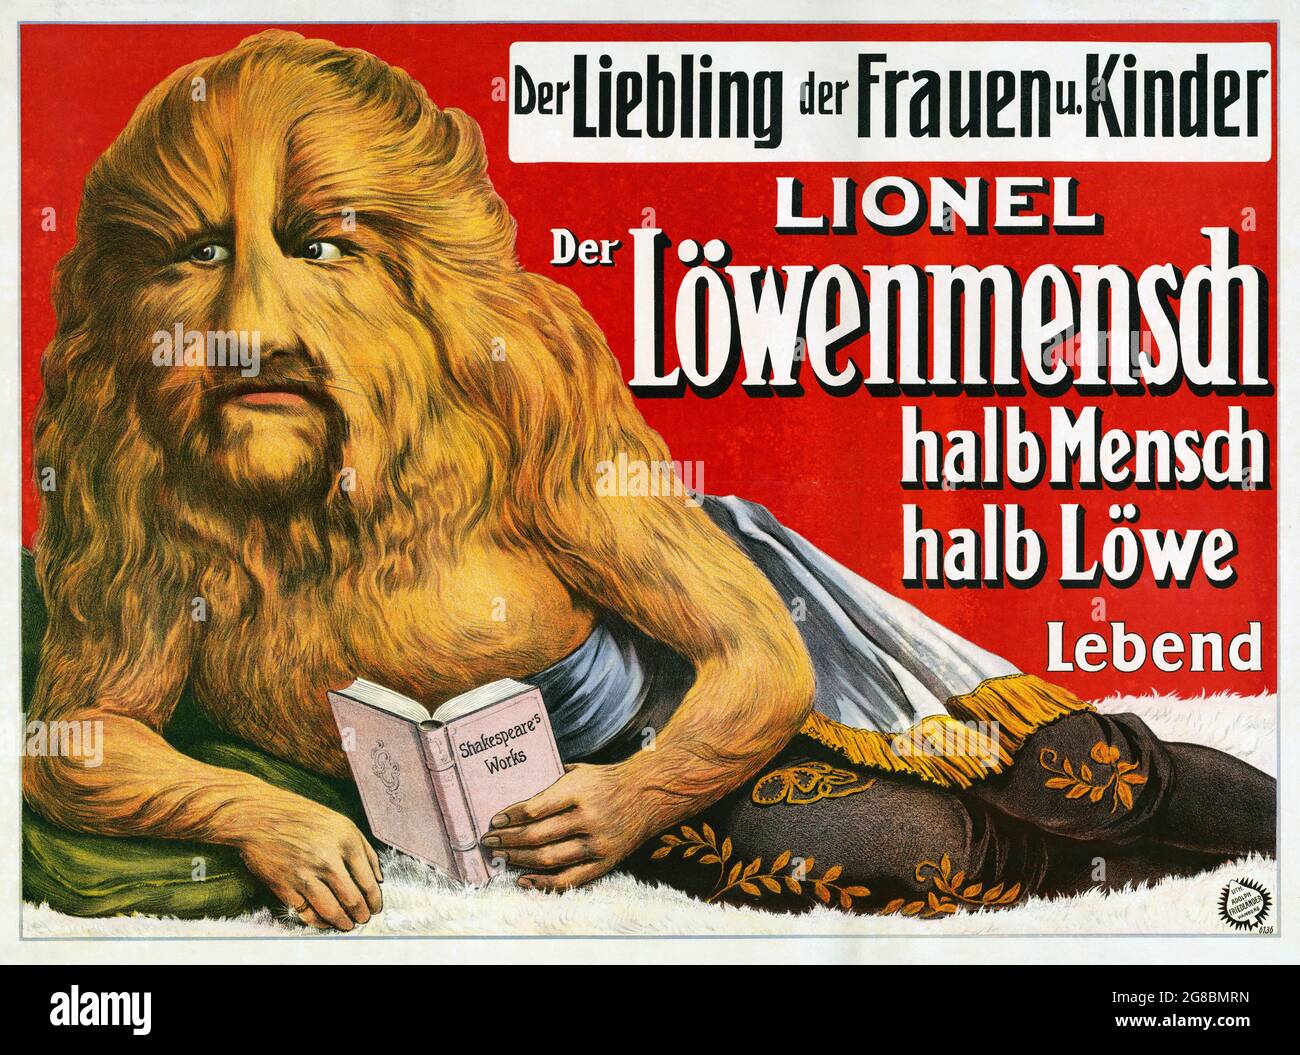 Poster che mostra un uomo con la testa dei leoni che legge Shakespeare. Ottimizzato digitalmente. "Lionel der Löwenmensch, halb mensch halb Löwe". Lebend. Poster del Circus. Foto Stock